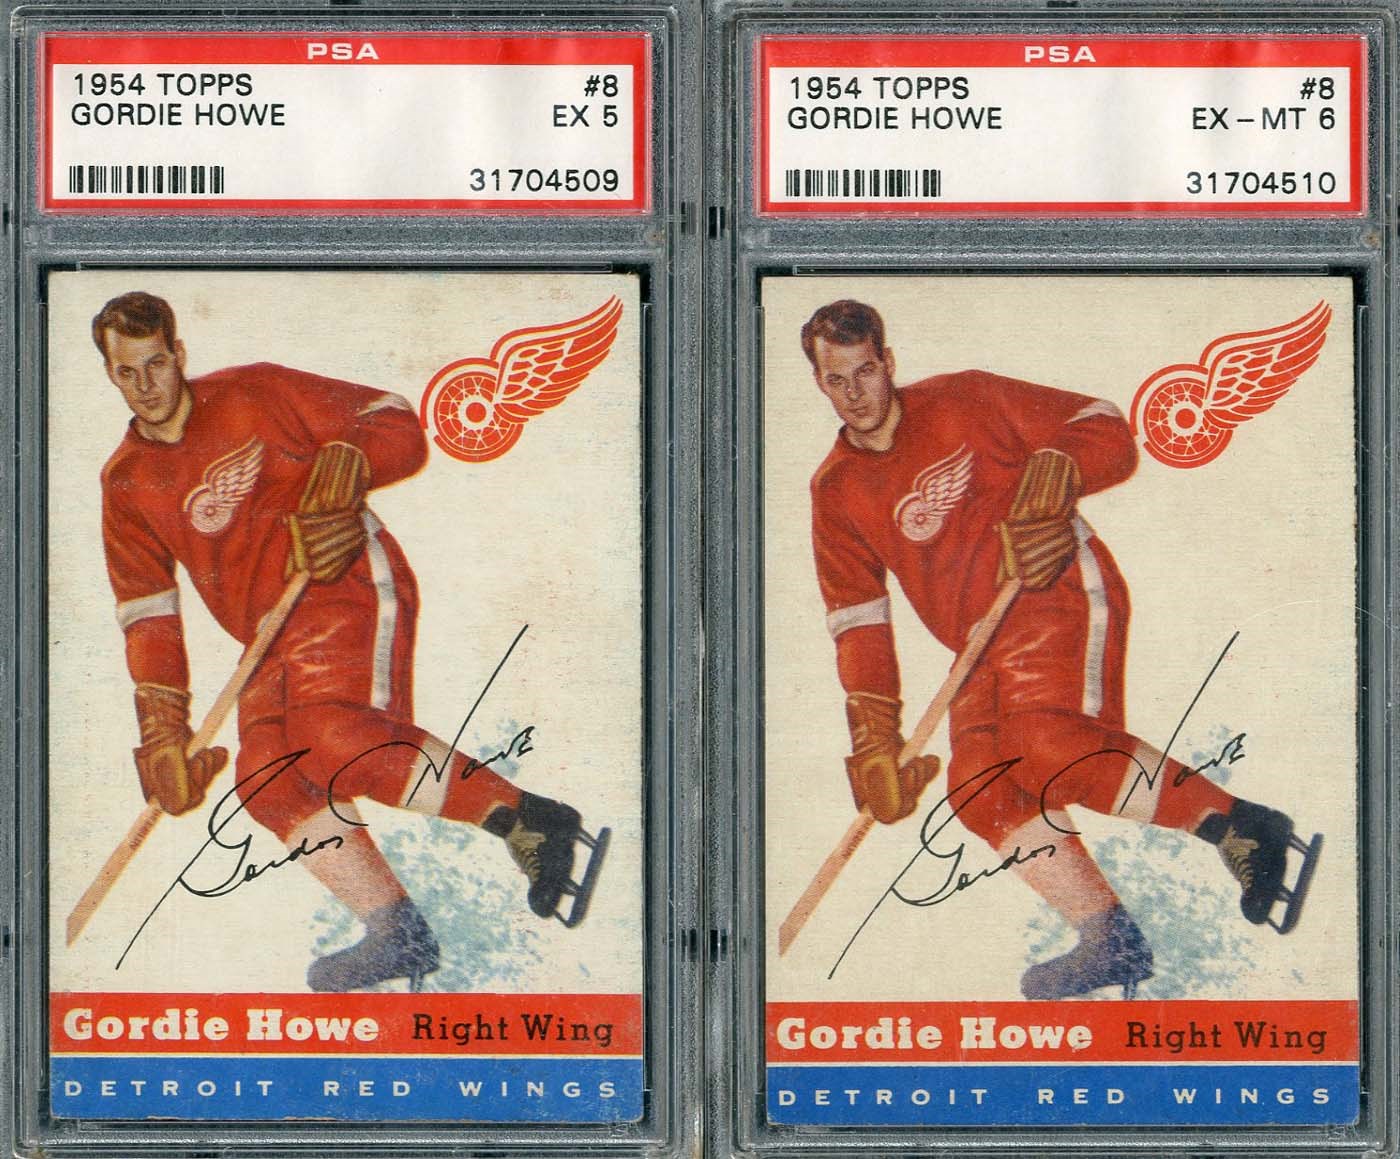 - 1954 Topps #8 Gordie Howe Pair of PSA Graded Cards!